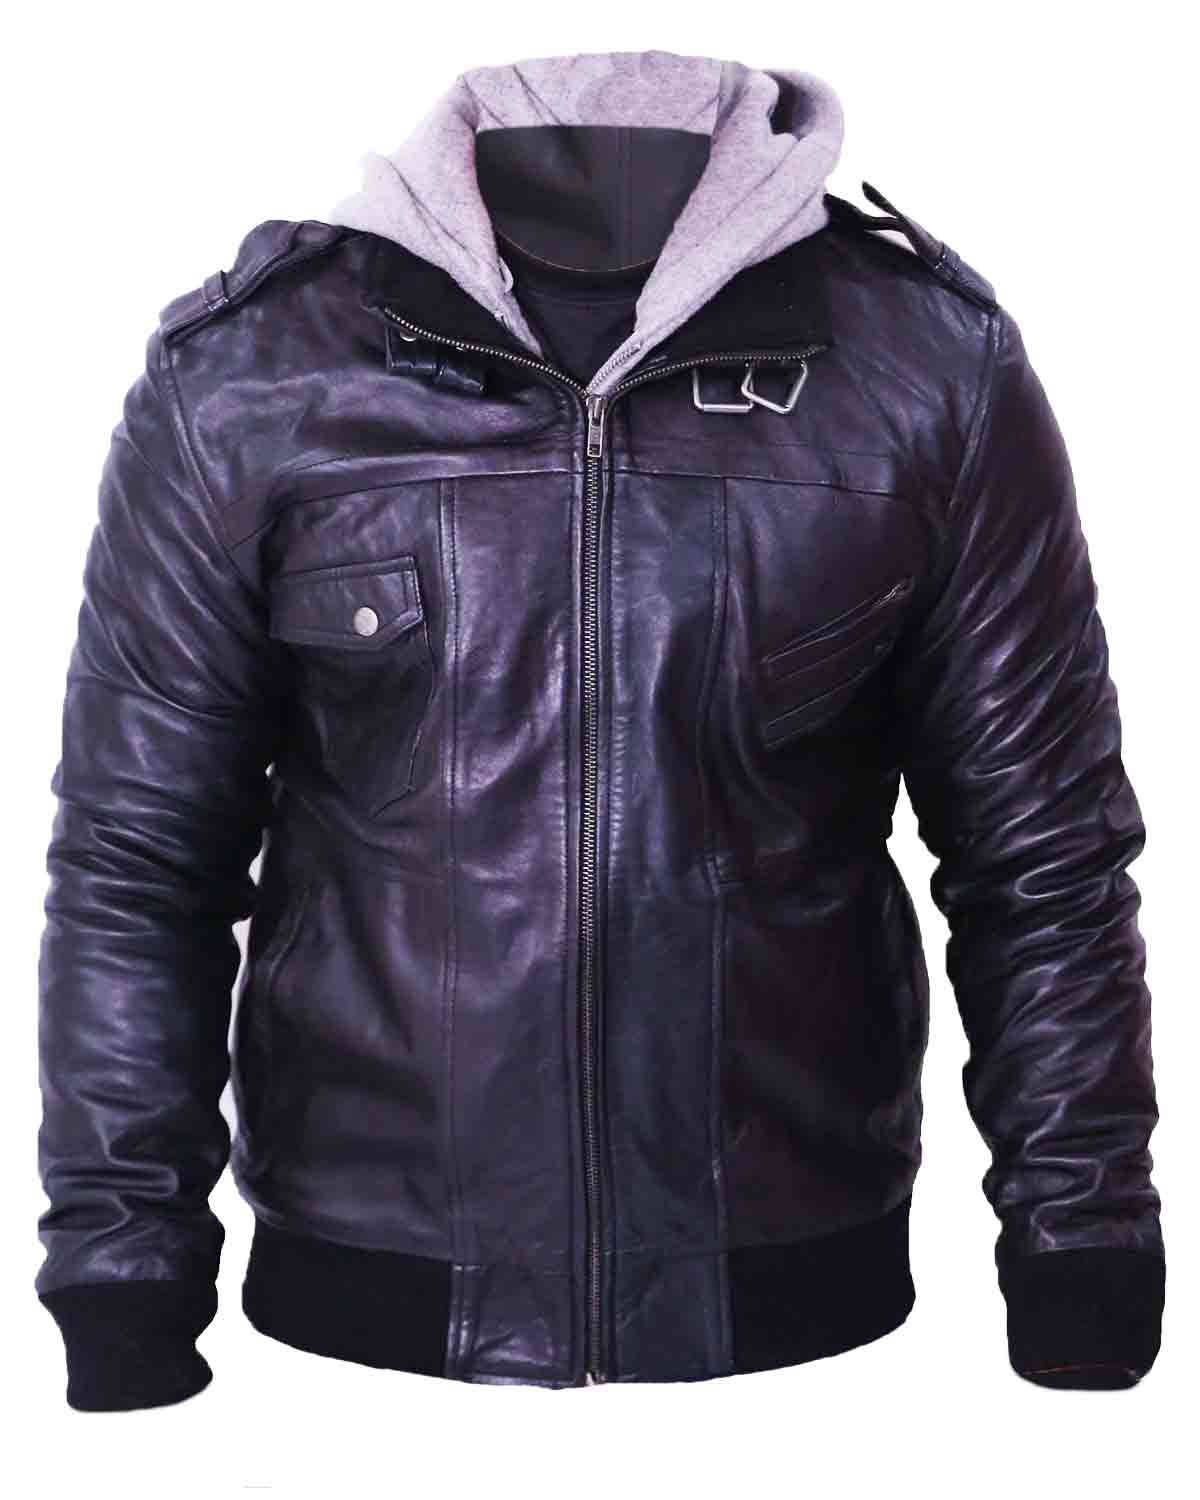 Elite Men's Grey Removable Hood Black Leather Jacket